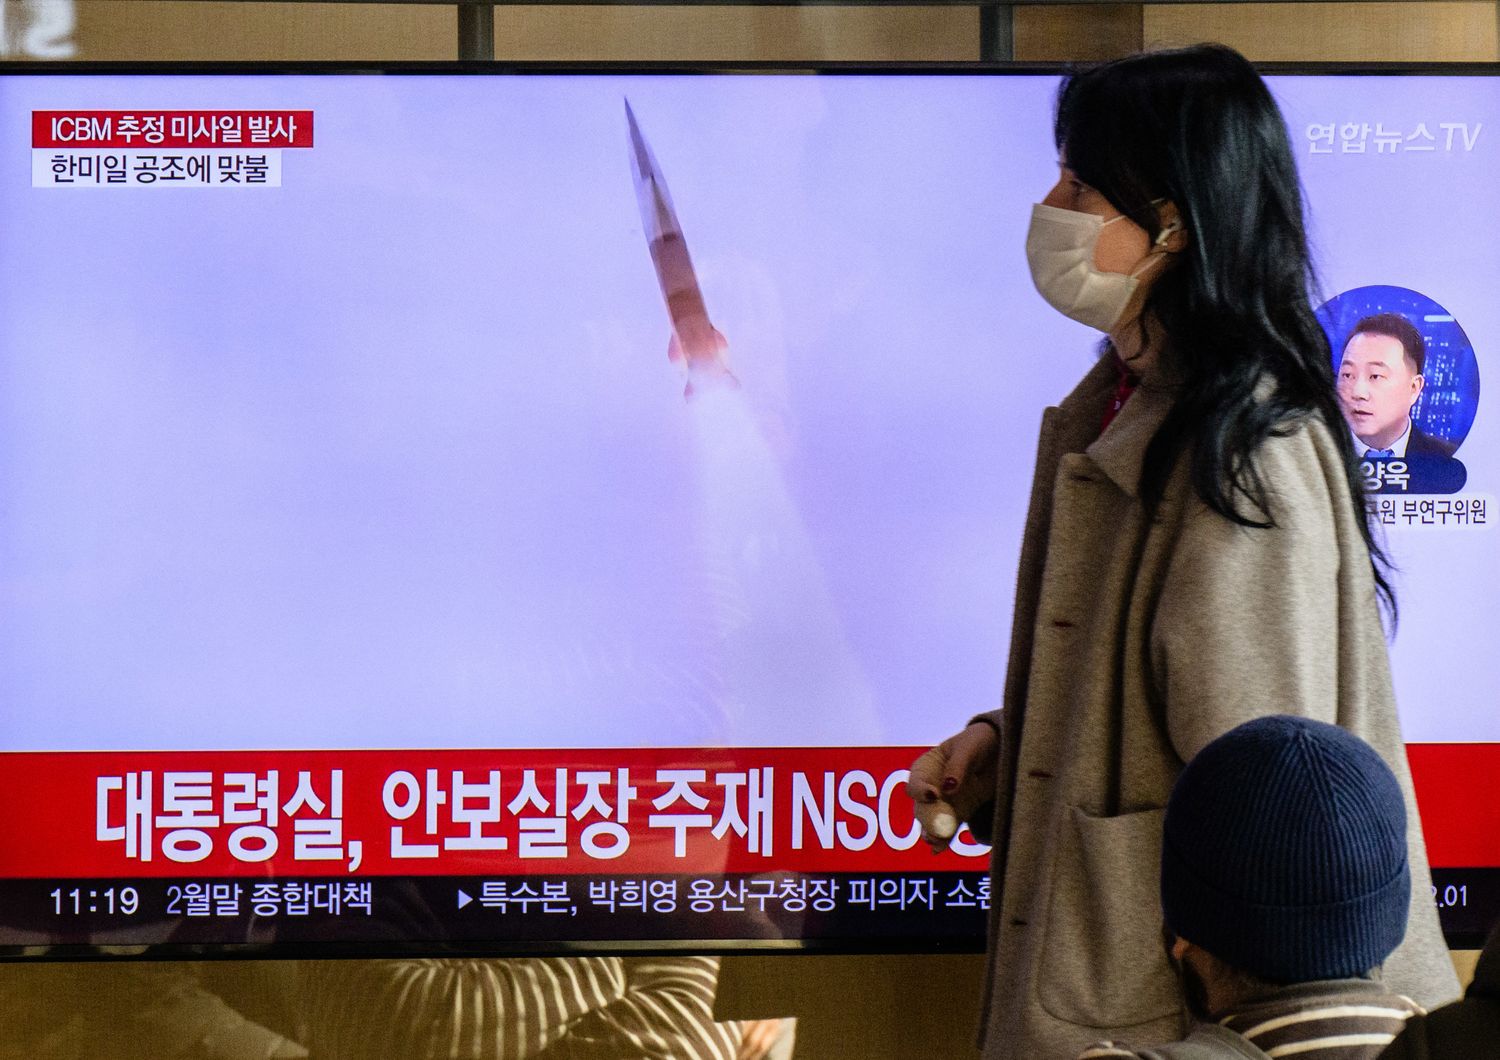 Una donna passa davanti a uno schermo che trasmette la notizia del lancio di un missile nordcoreano